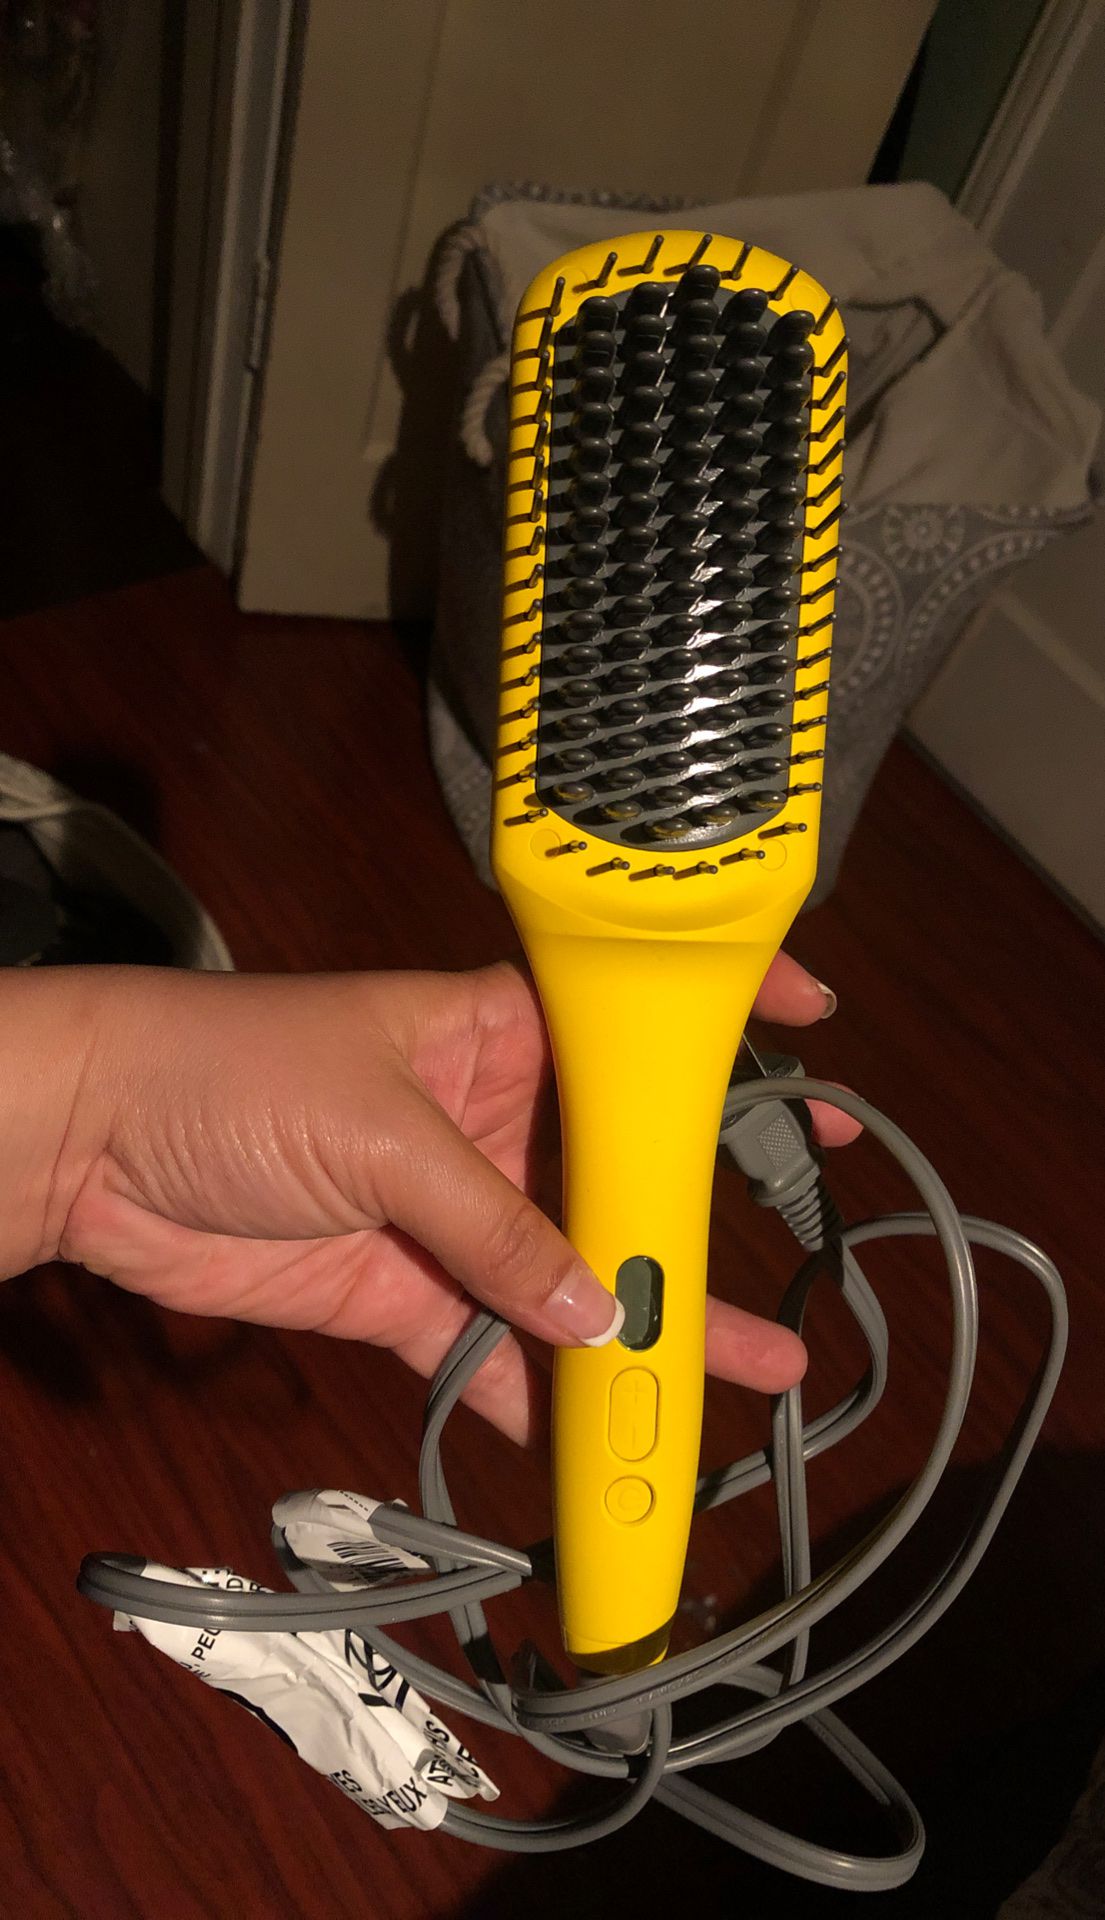 Drybar hairbrush